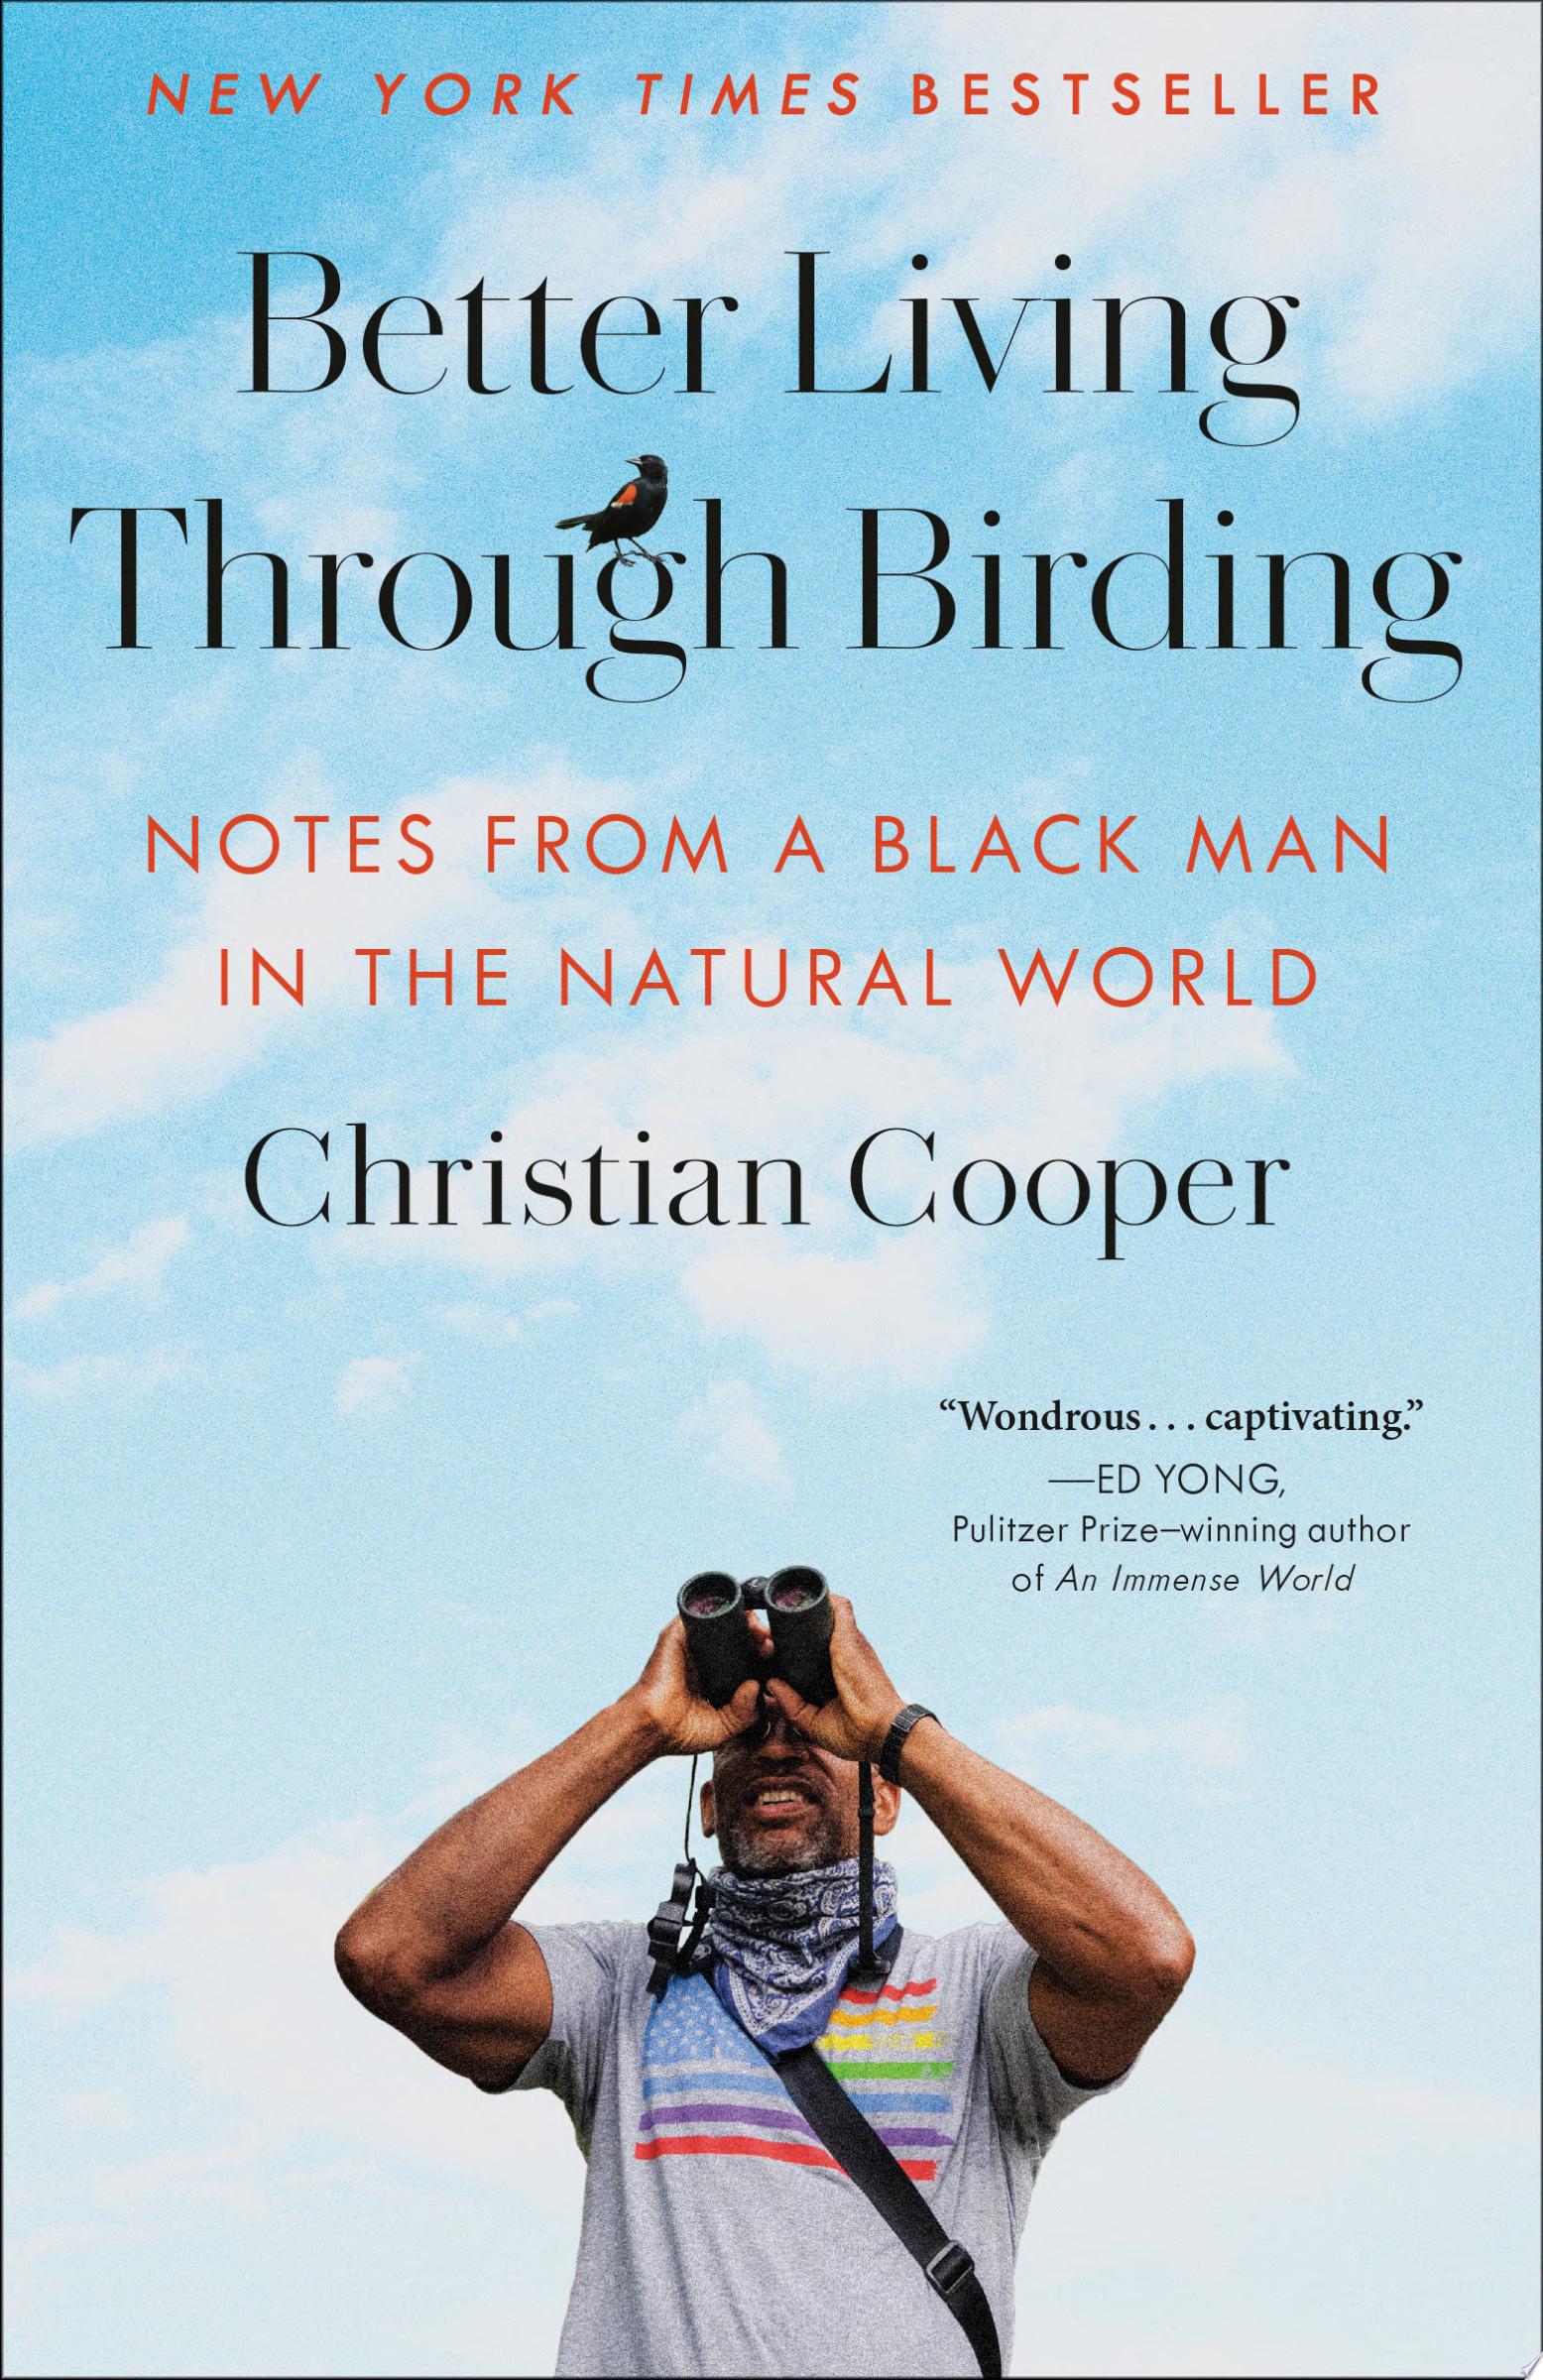 Image for "Better Living Through Birding"